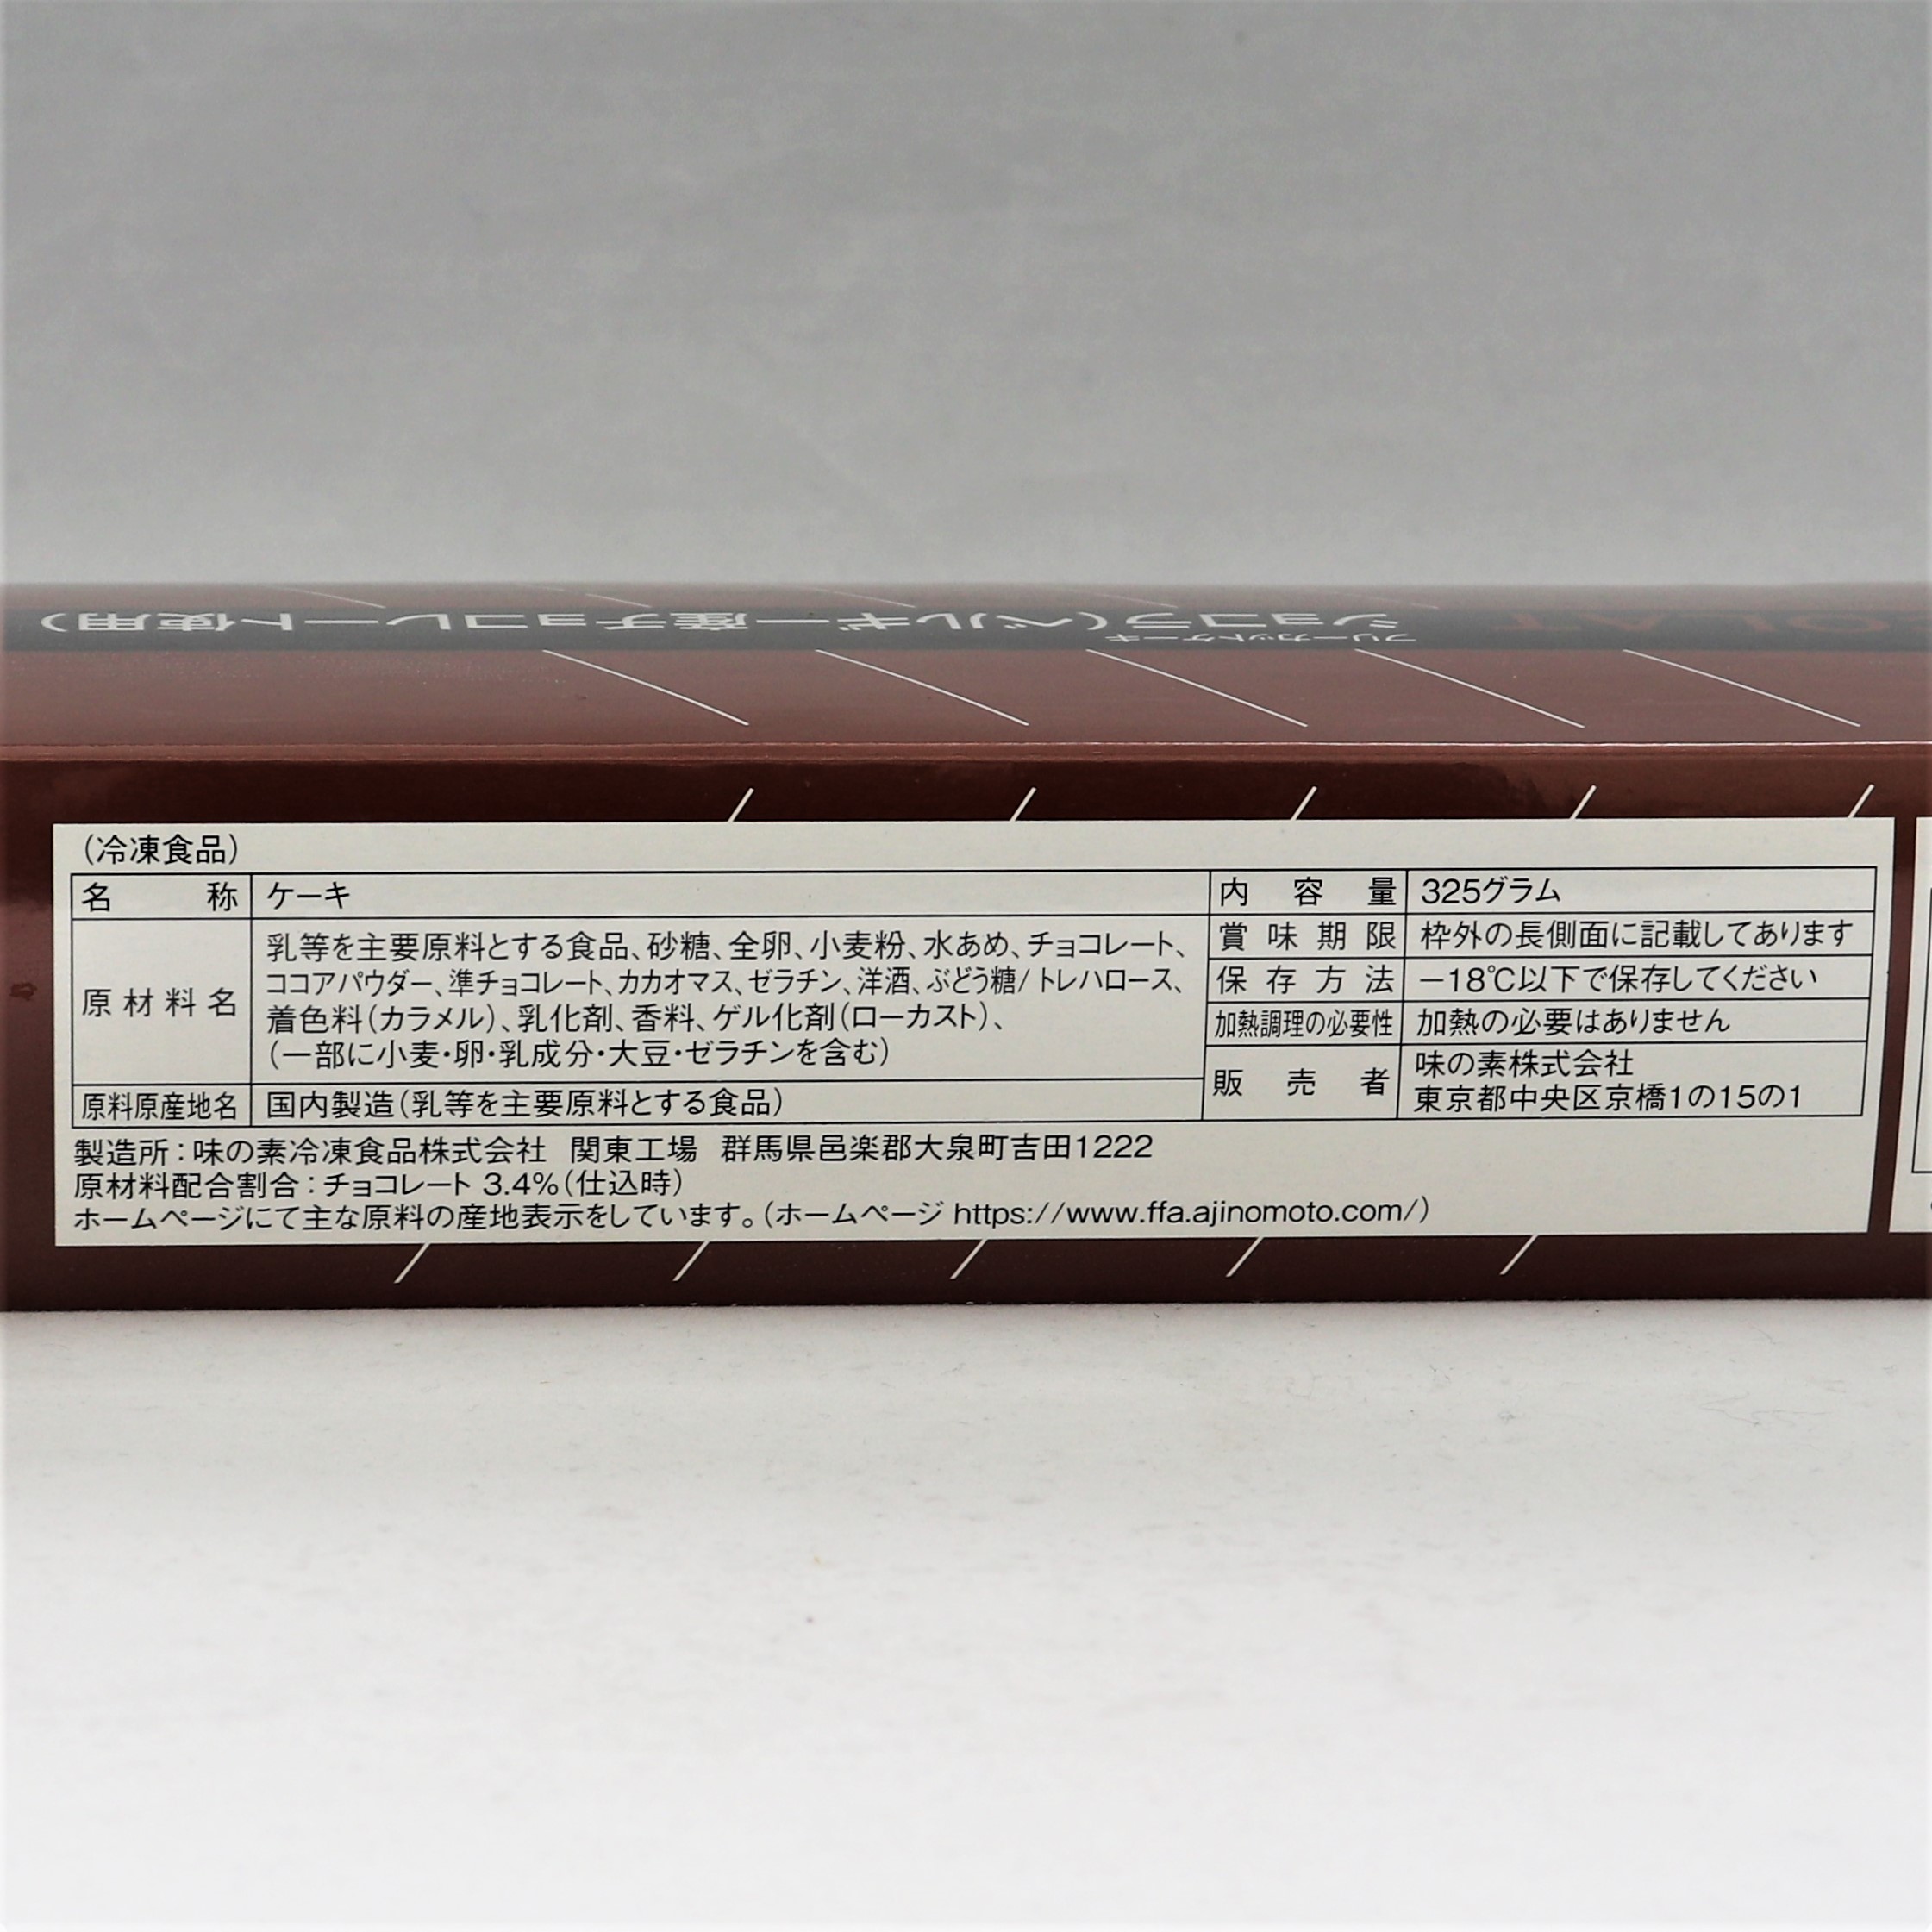 【業務用】味の素冷凍食品 フレックフリーカットケーキショコラ(ベルギー産チョコレート使用) 325g